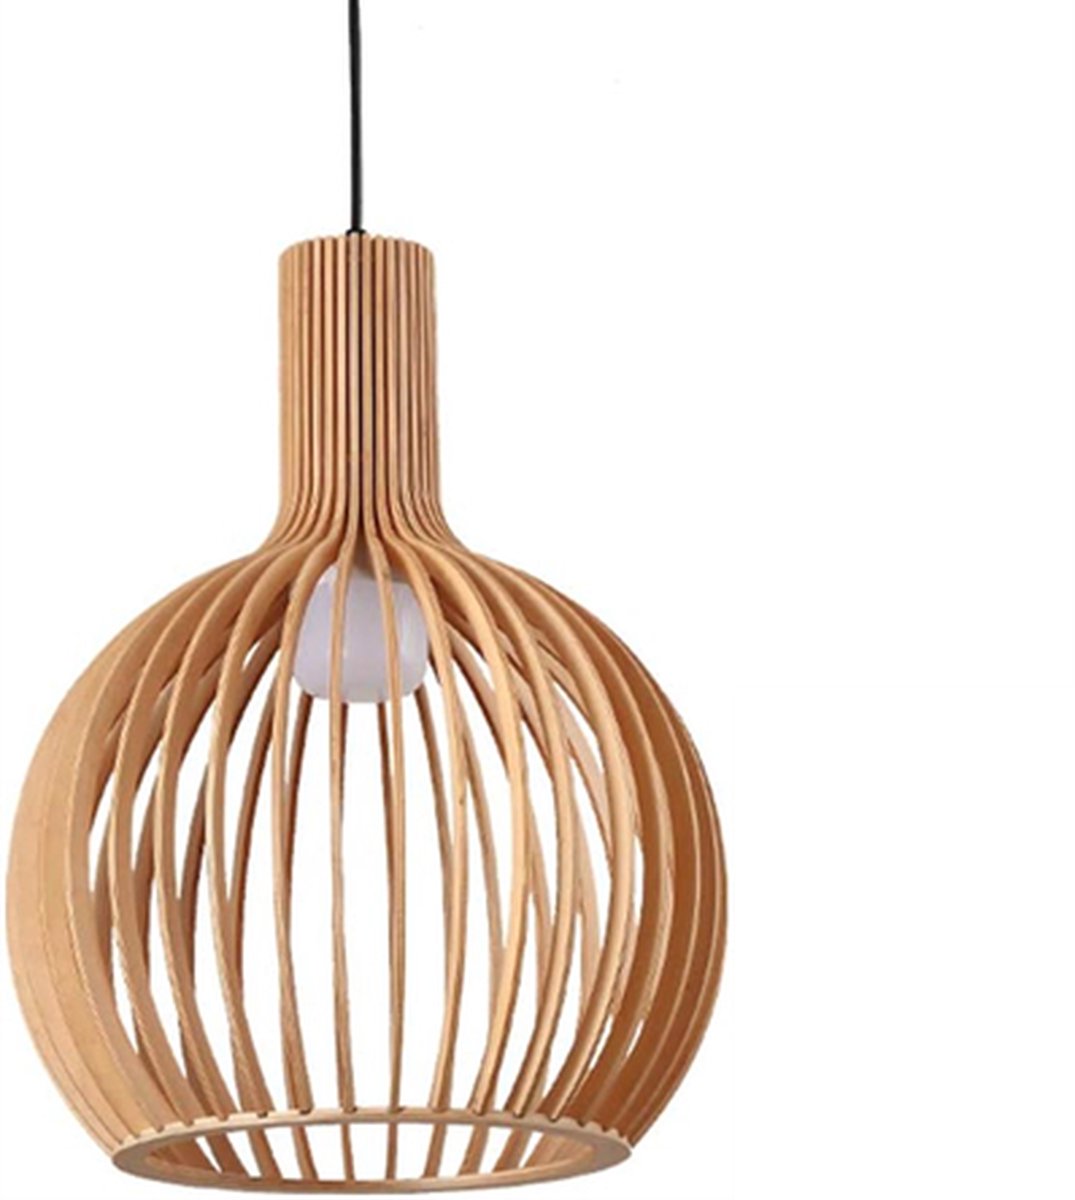 Hanglamp Rosolina - Handgemaakt - Bamboe - Rotan - Ø45cm - Inclusief lichtbron - Chique - Natuurlijke uitstraling